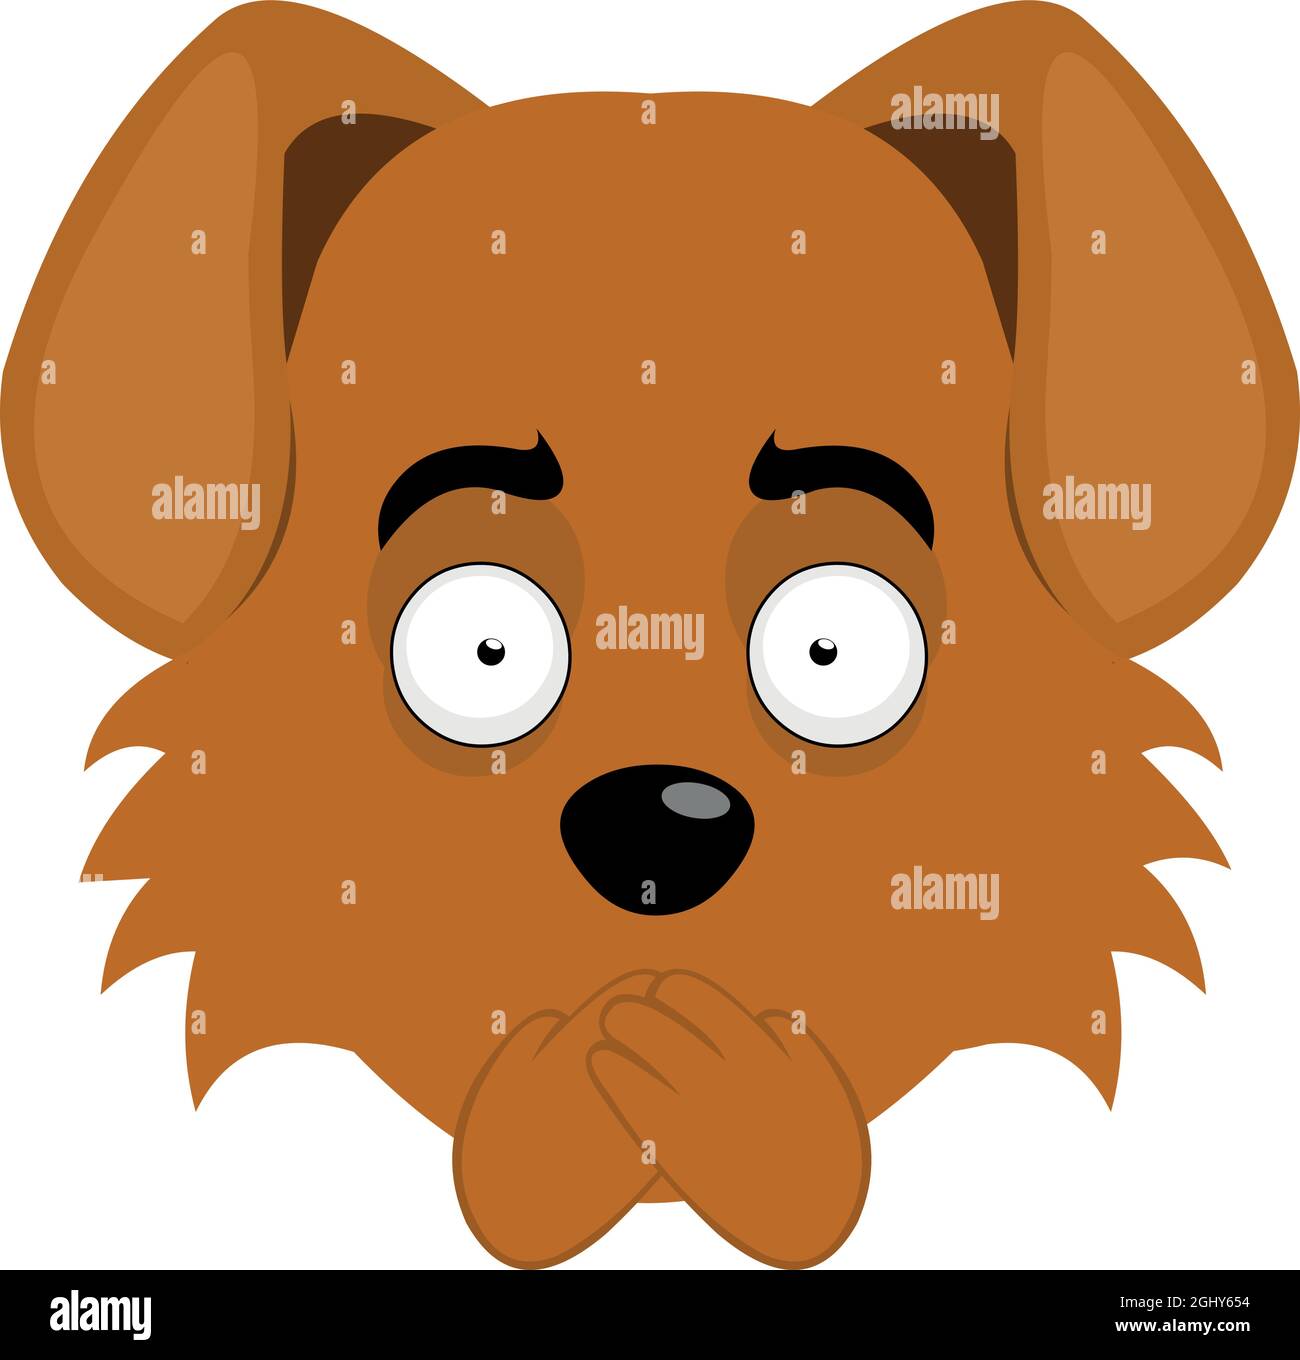 Illustrazione vettoriale dell'emoticon del volto di un cane da cartoon che fa silenzio coprendo la bocca con le mani Illustrazione Vettoriale